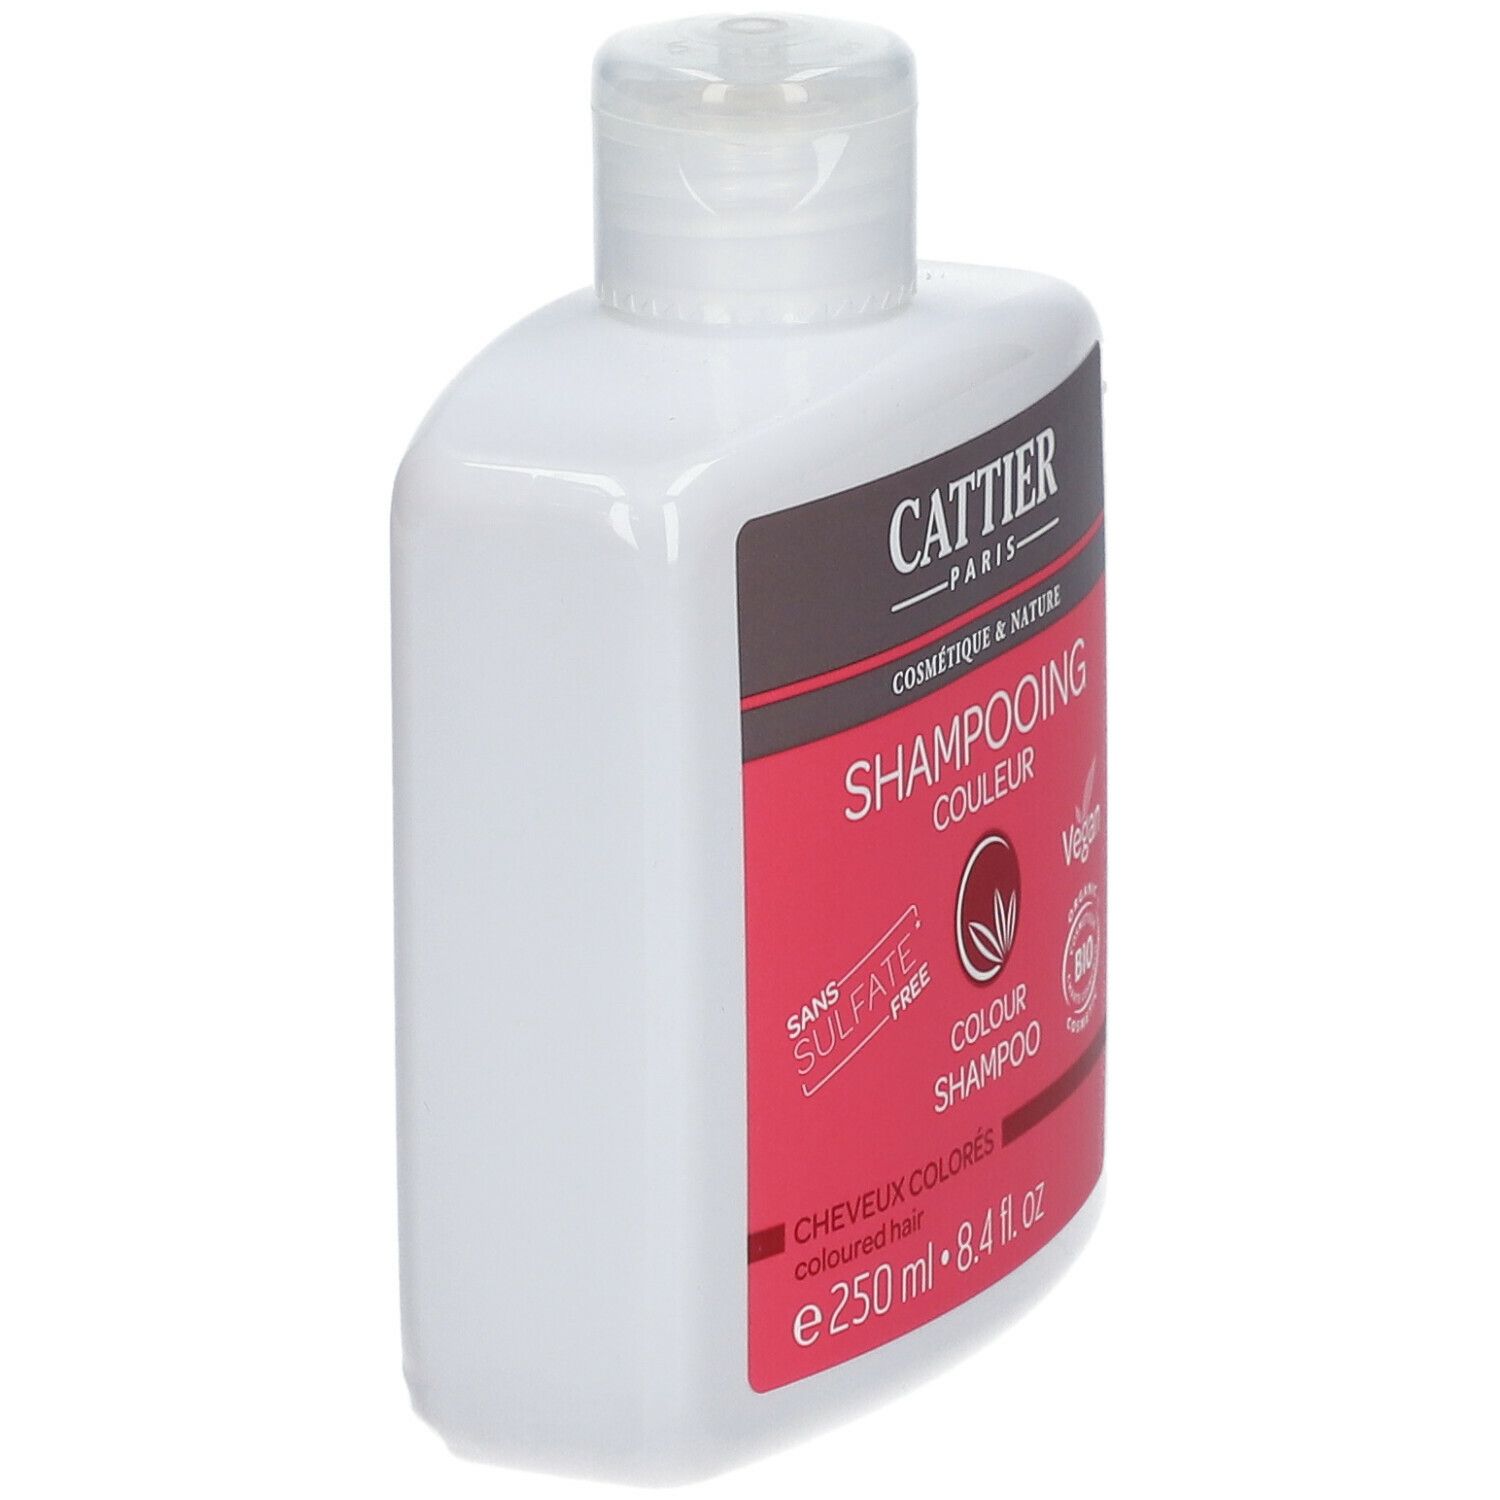 CATTIER Shampooing Couleur - 0% Sulfate Cheuveux Colorés